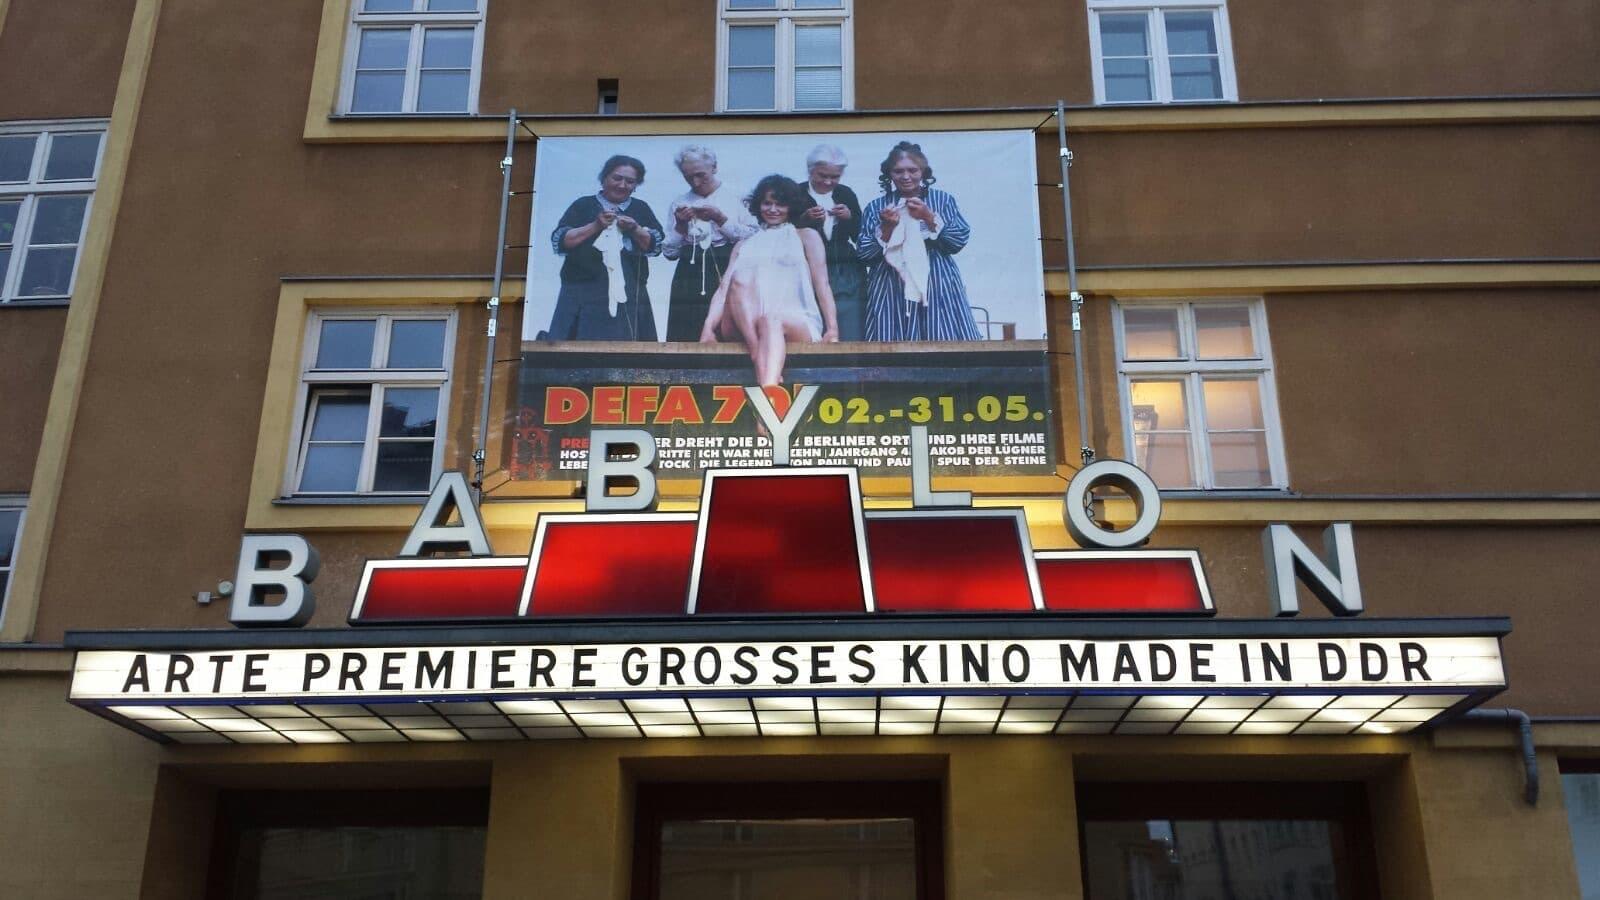 Großes Kino made in DDR backdrop